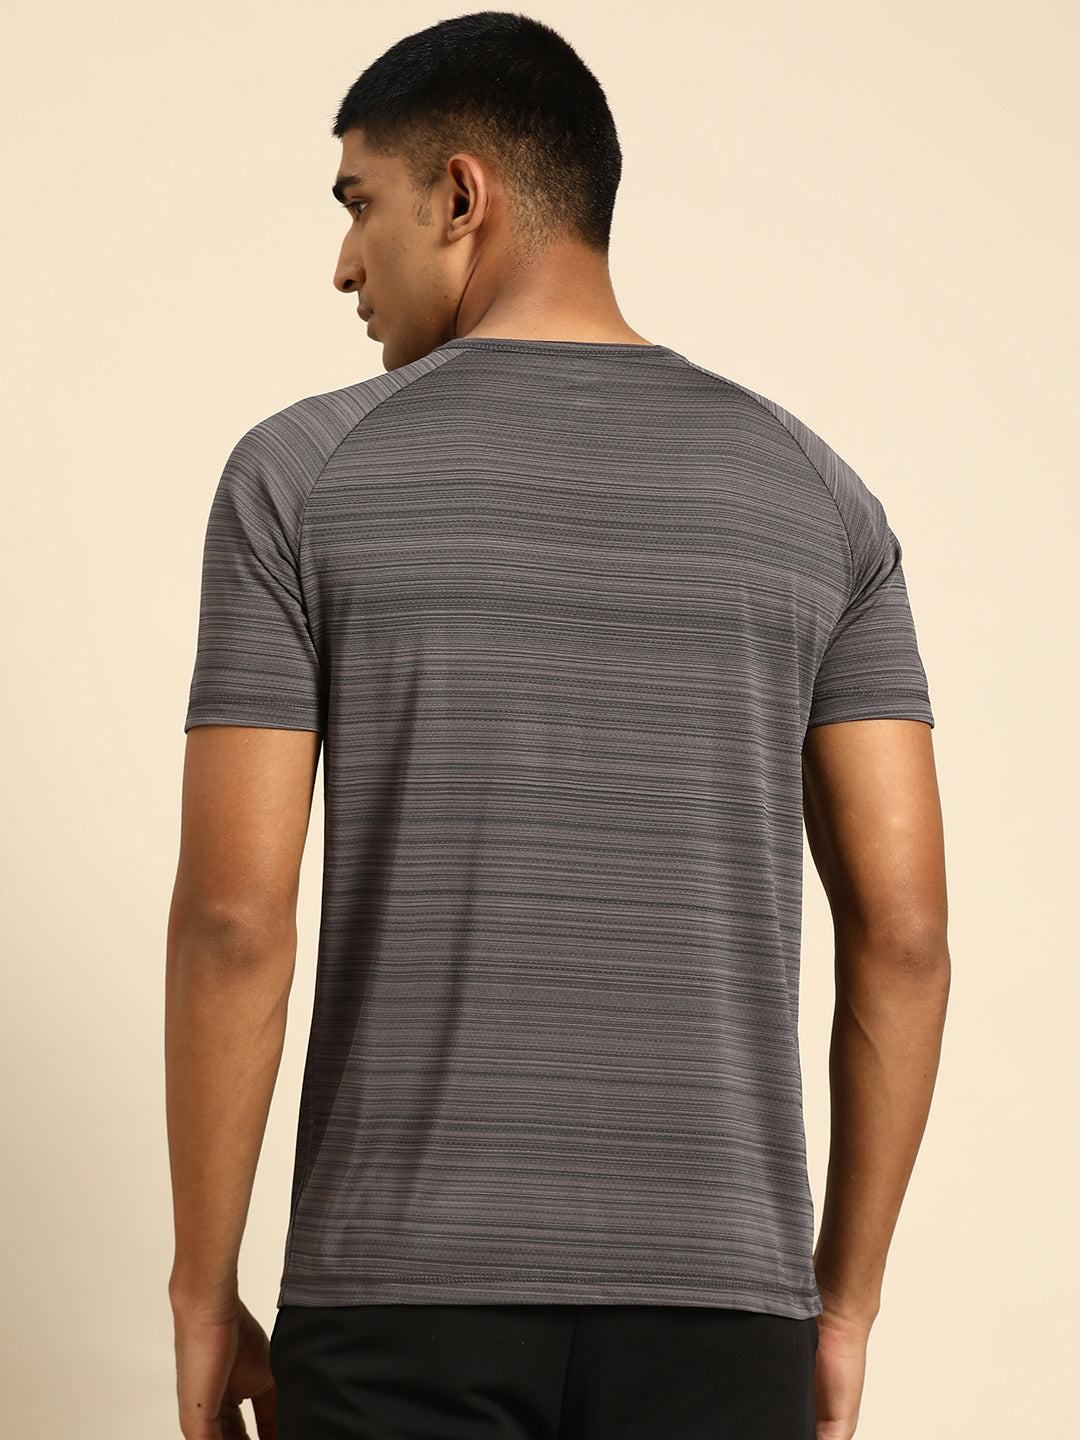 128 Textured Dri-Fit Sports Tshirt I Charcoal